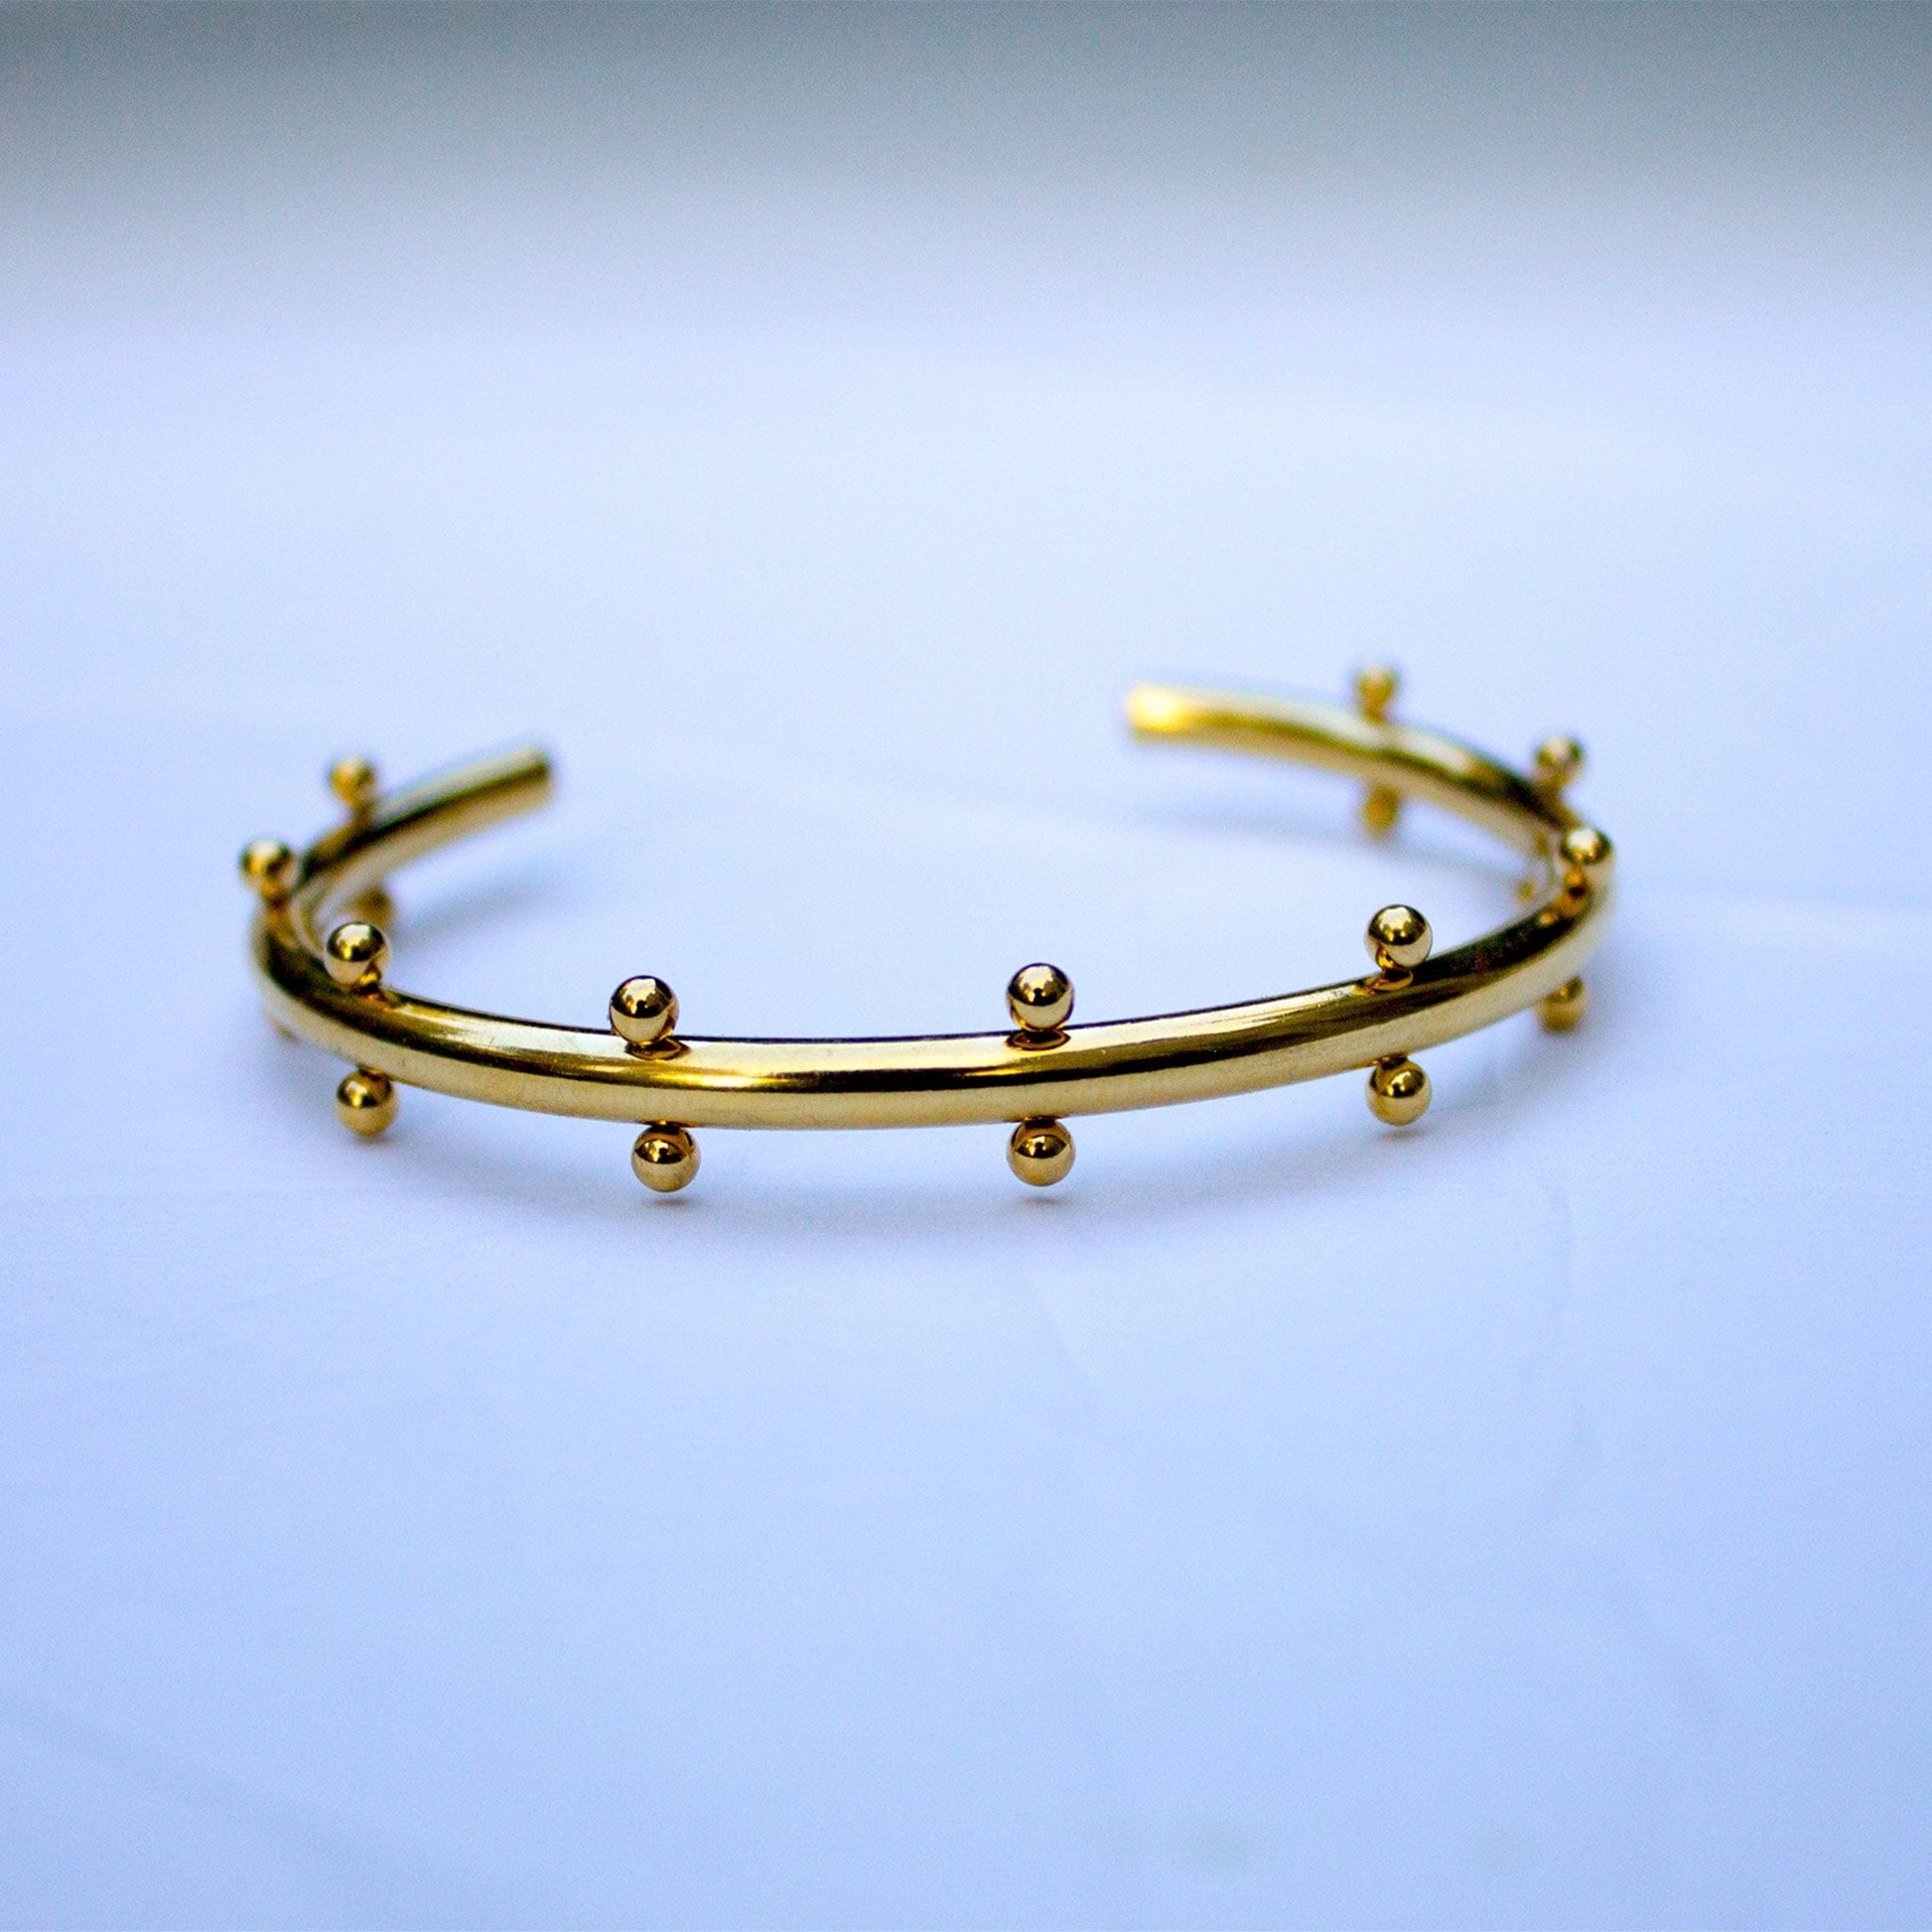 Mignon Bracelet Set Jewelry